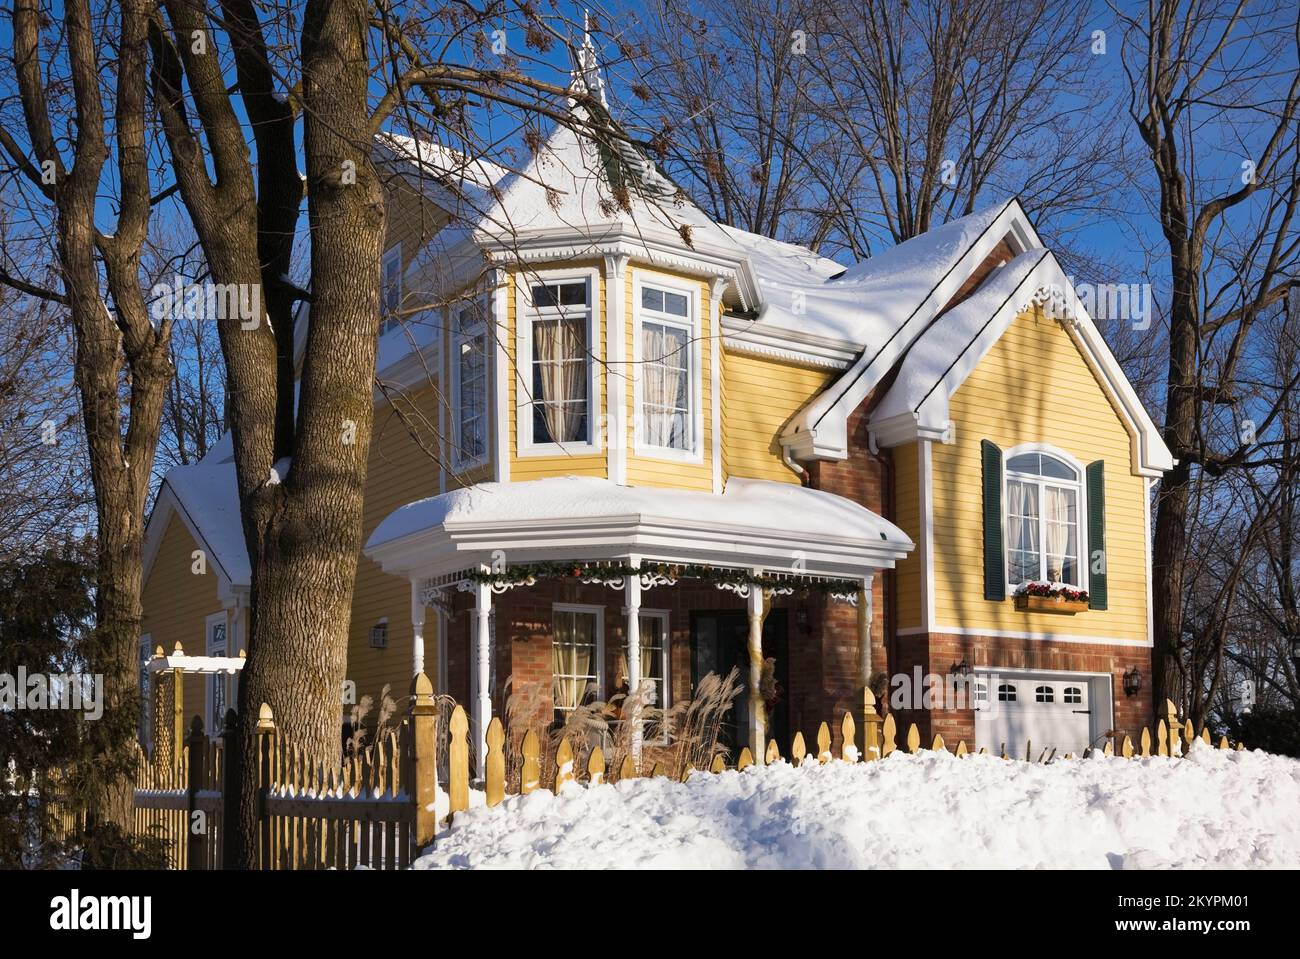 Briques nuancées rouges et jaunes avec bordure blanche et verte deux étagés style victorien maison en hiver. Banque D'Images